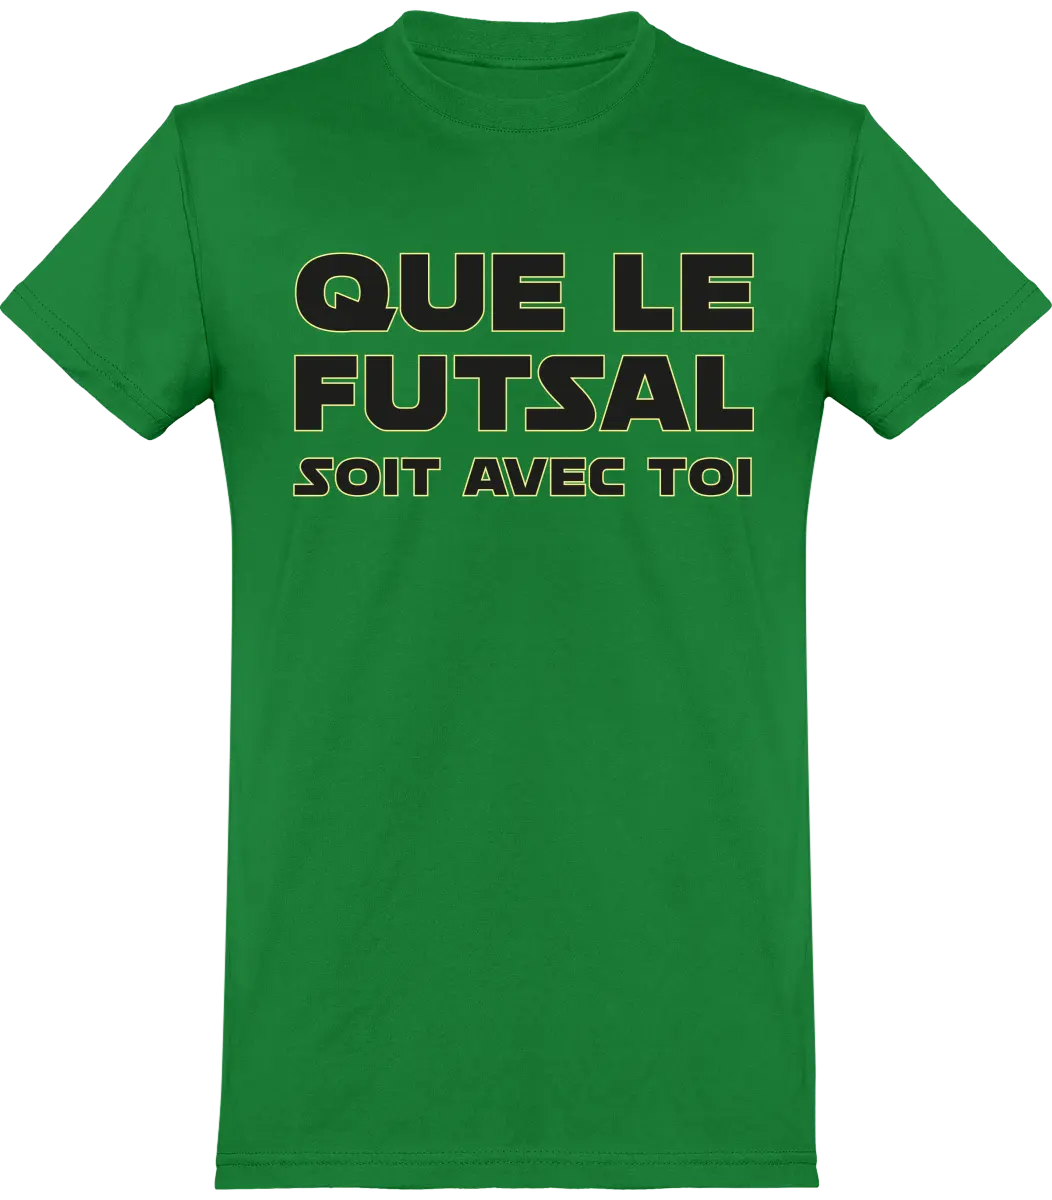 T-shirt Foot "Que le futsal soit avec toi" | Mixte - French Humour